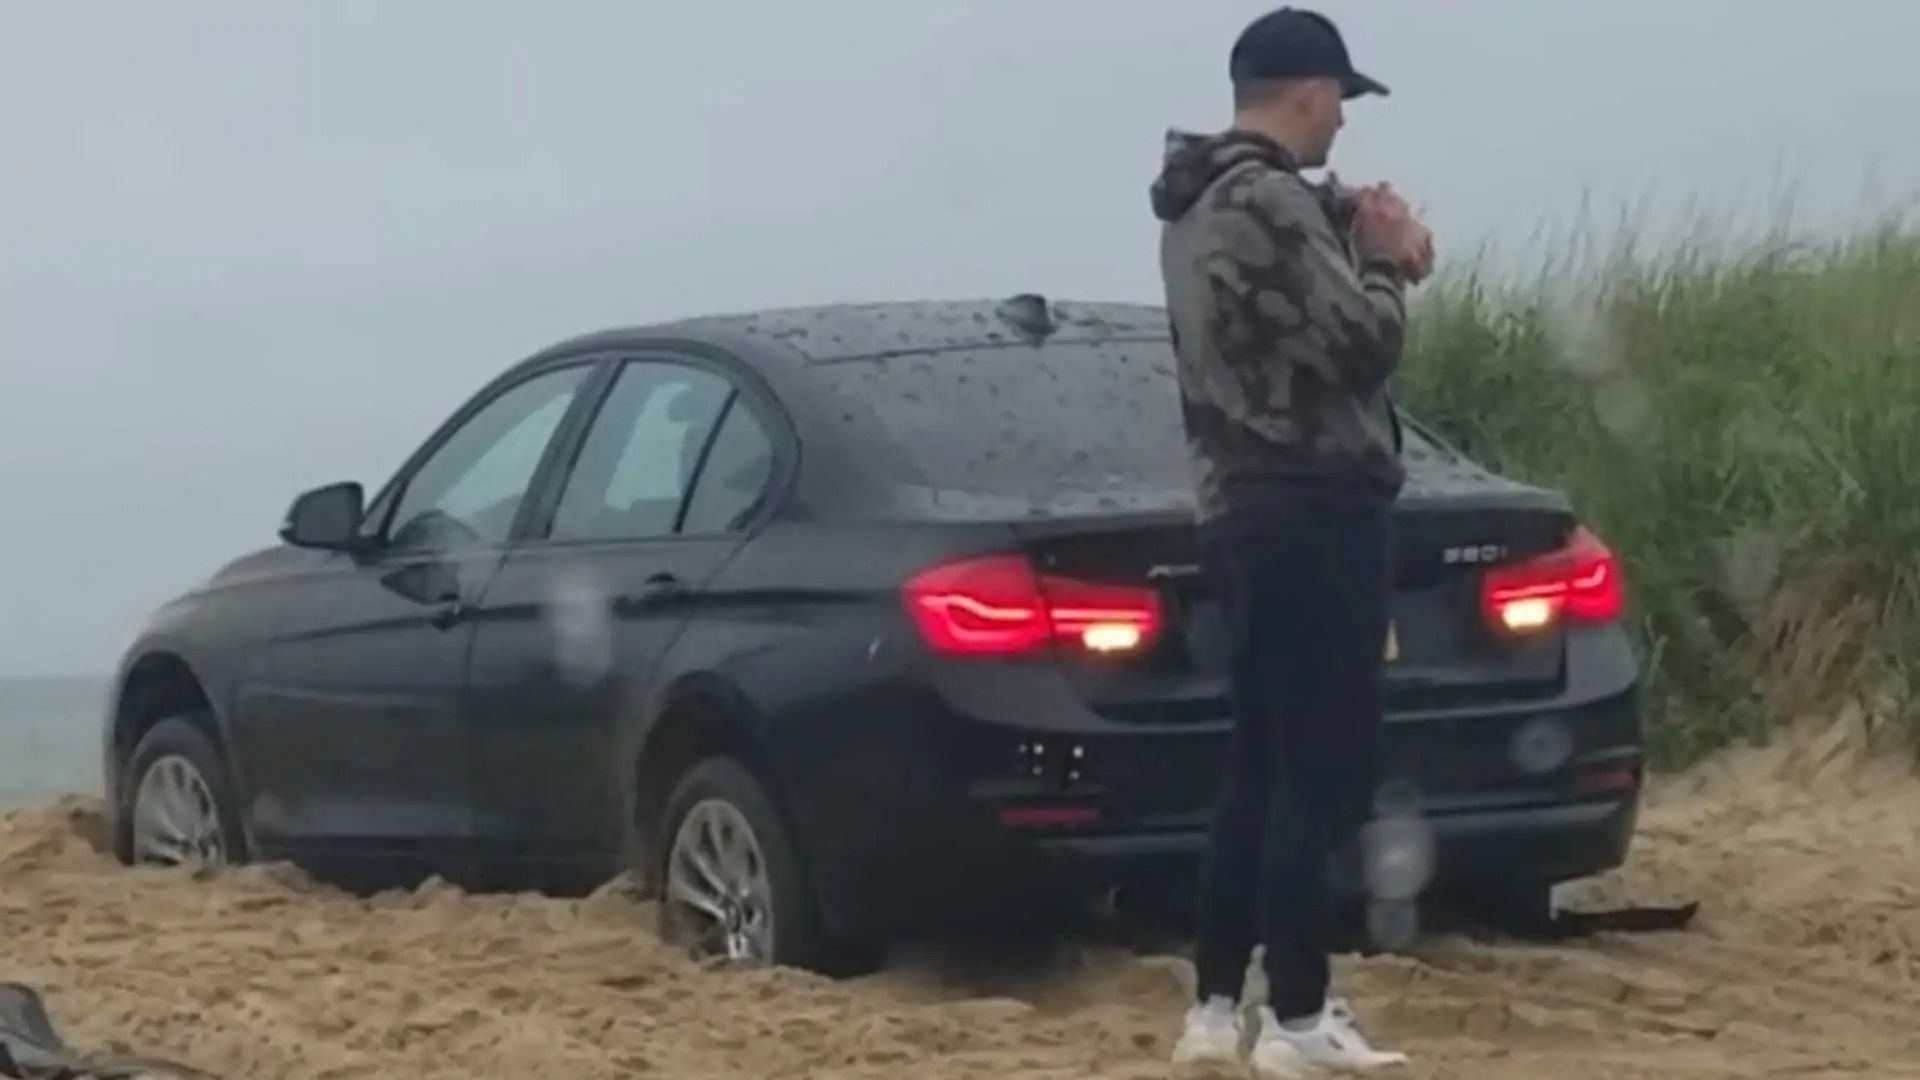 Посмотрите, как застрявший BMW самостоятельно пытается выбраться из песка, пока его владелец стоит снаружи